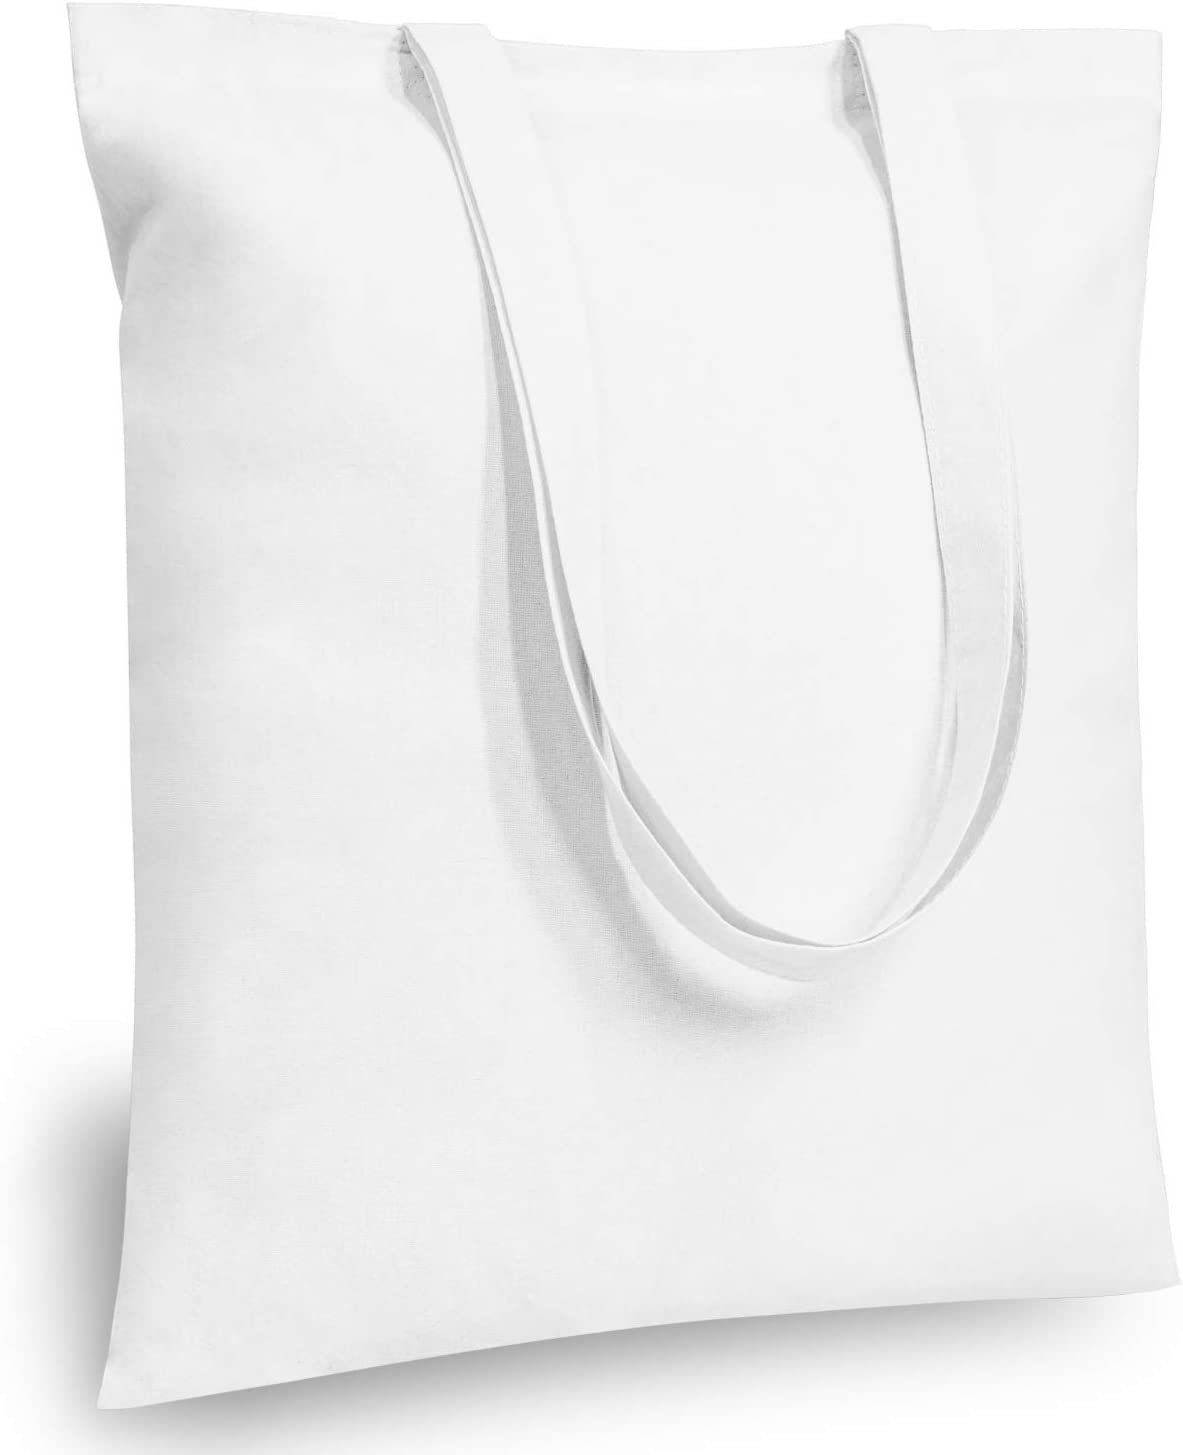 White LIBRA Zodiac Unisex Cotton Reusable Tote Bag (white)